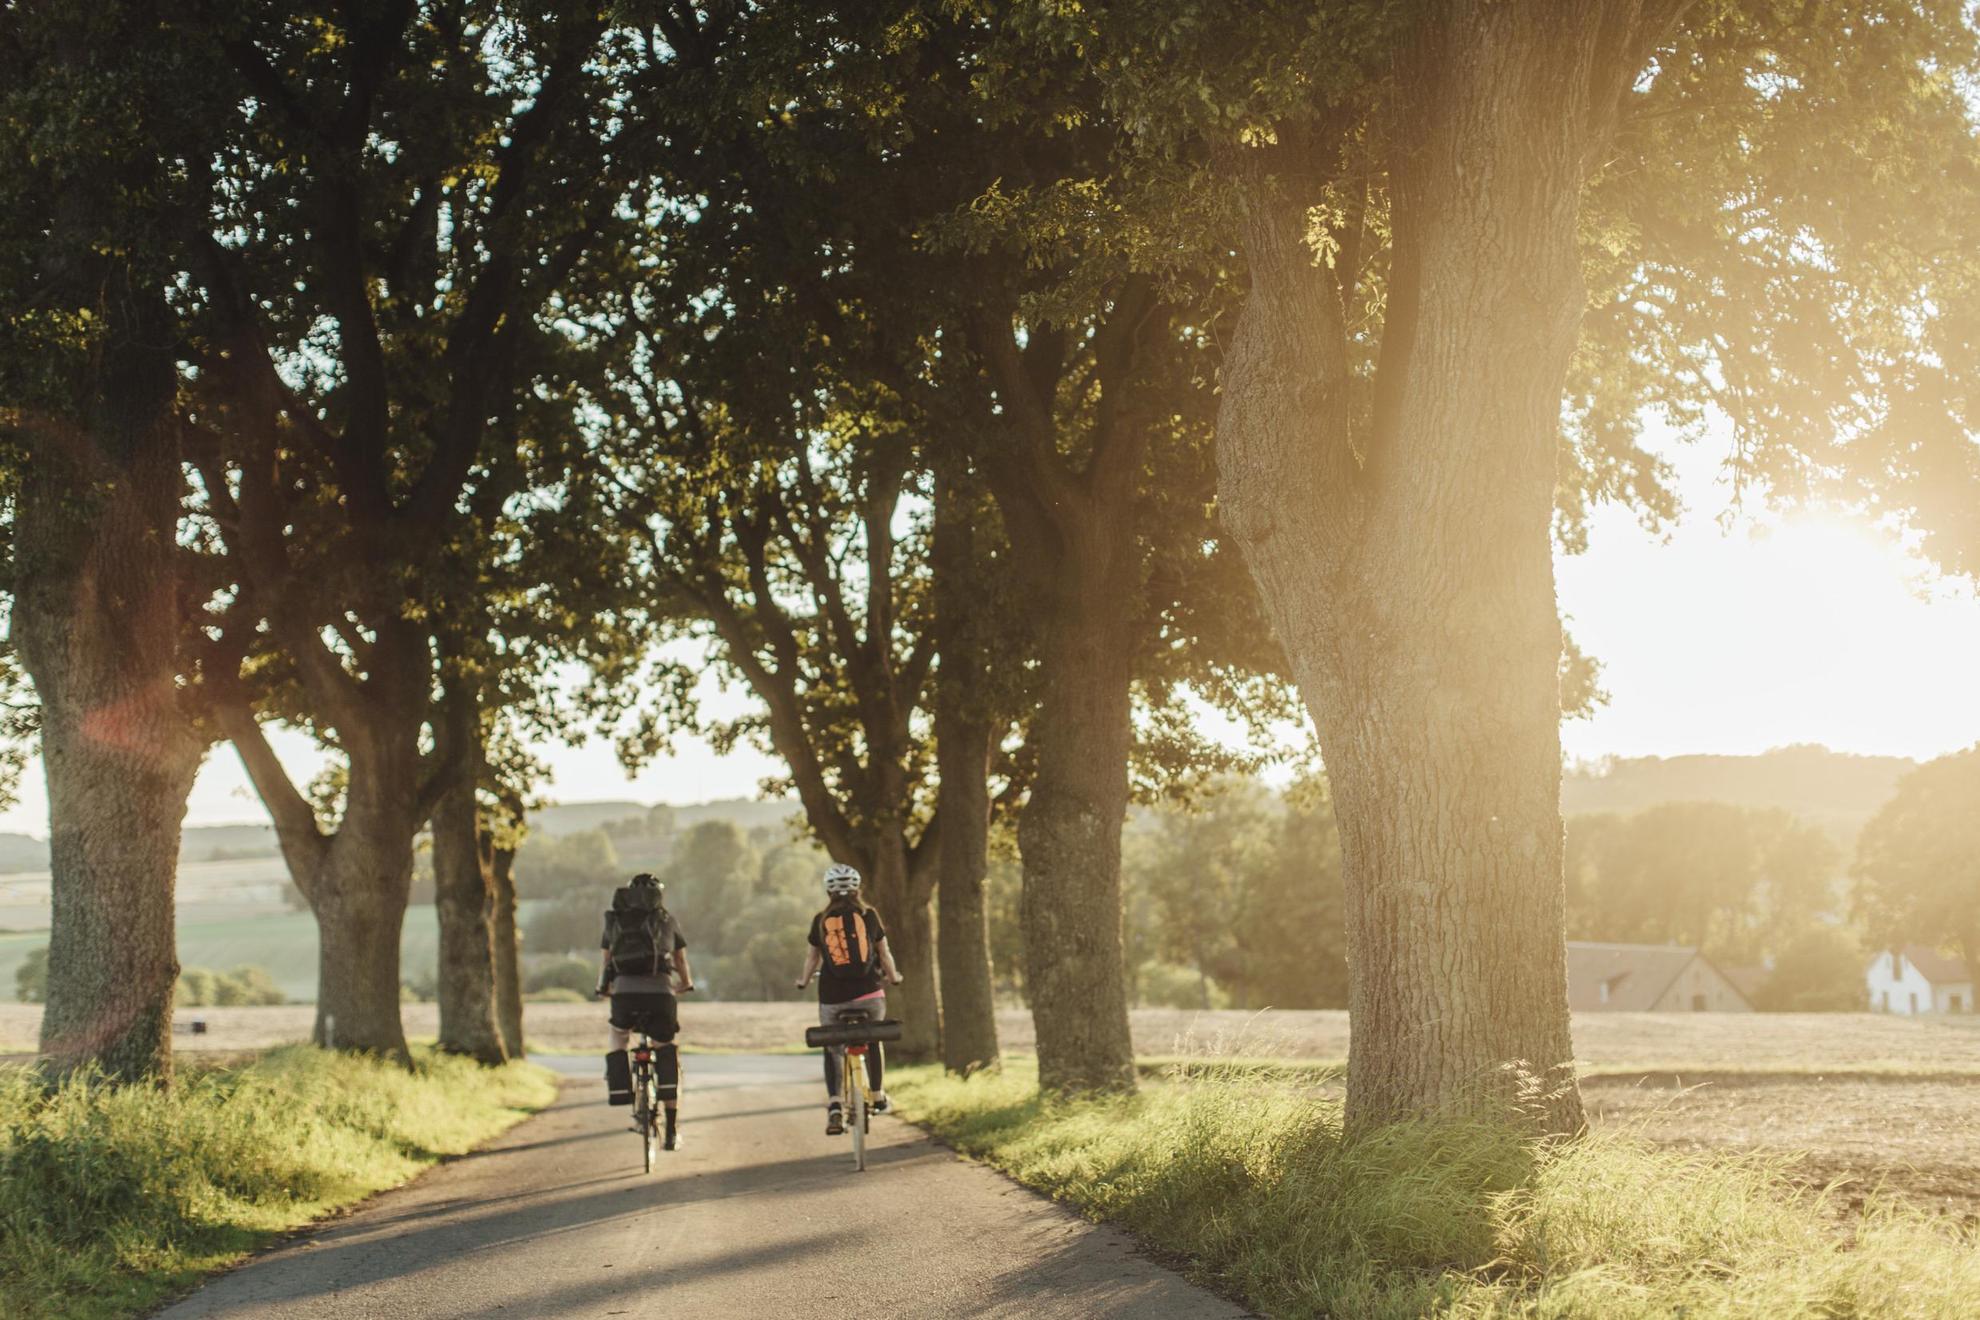 Deux personnes en train de faire du vélo le long d'une allée arborée et entourée de champs par une belle journée ensoleillée.